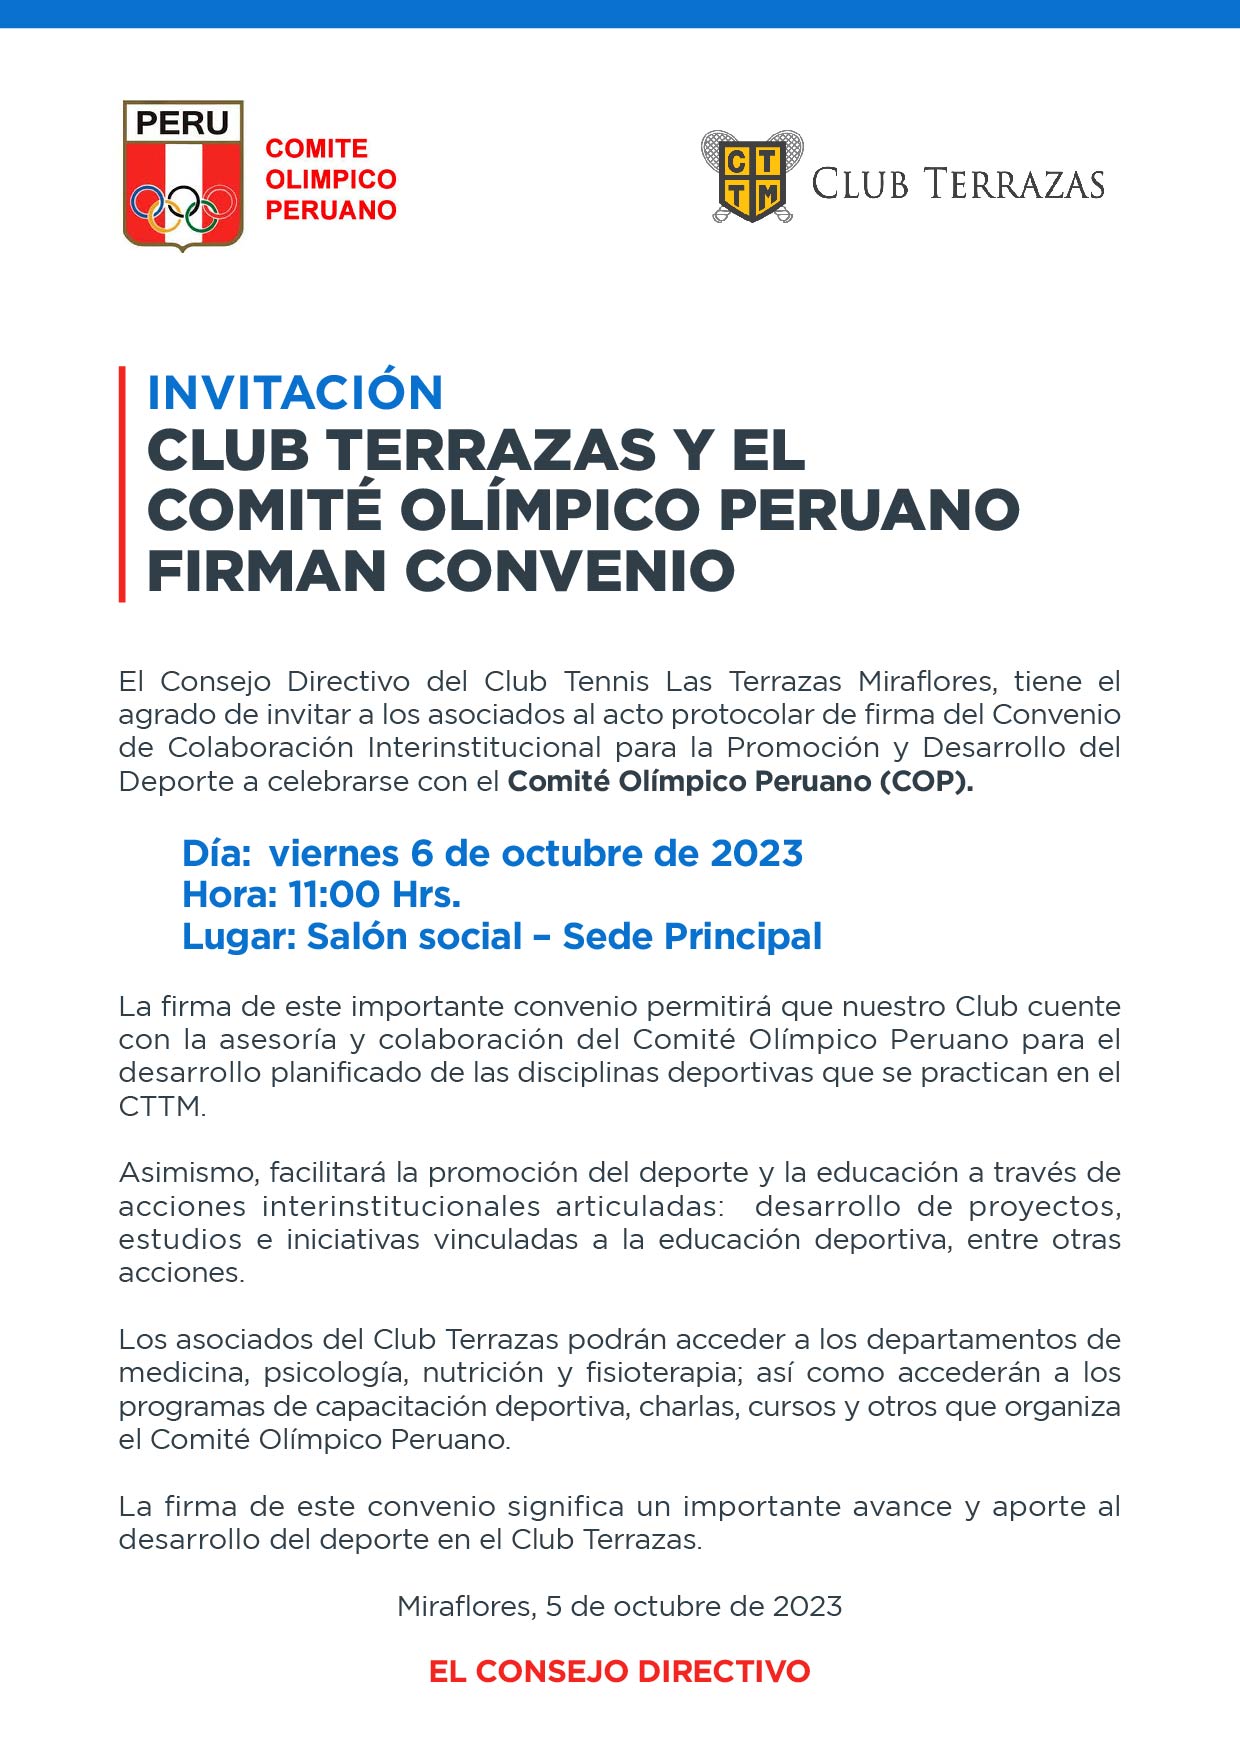 CLUB TERRAZAS Y EL COMITÉ OLÍMPICO PERUANO FIRMAN CONVENIO